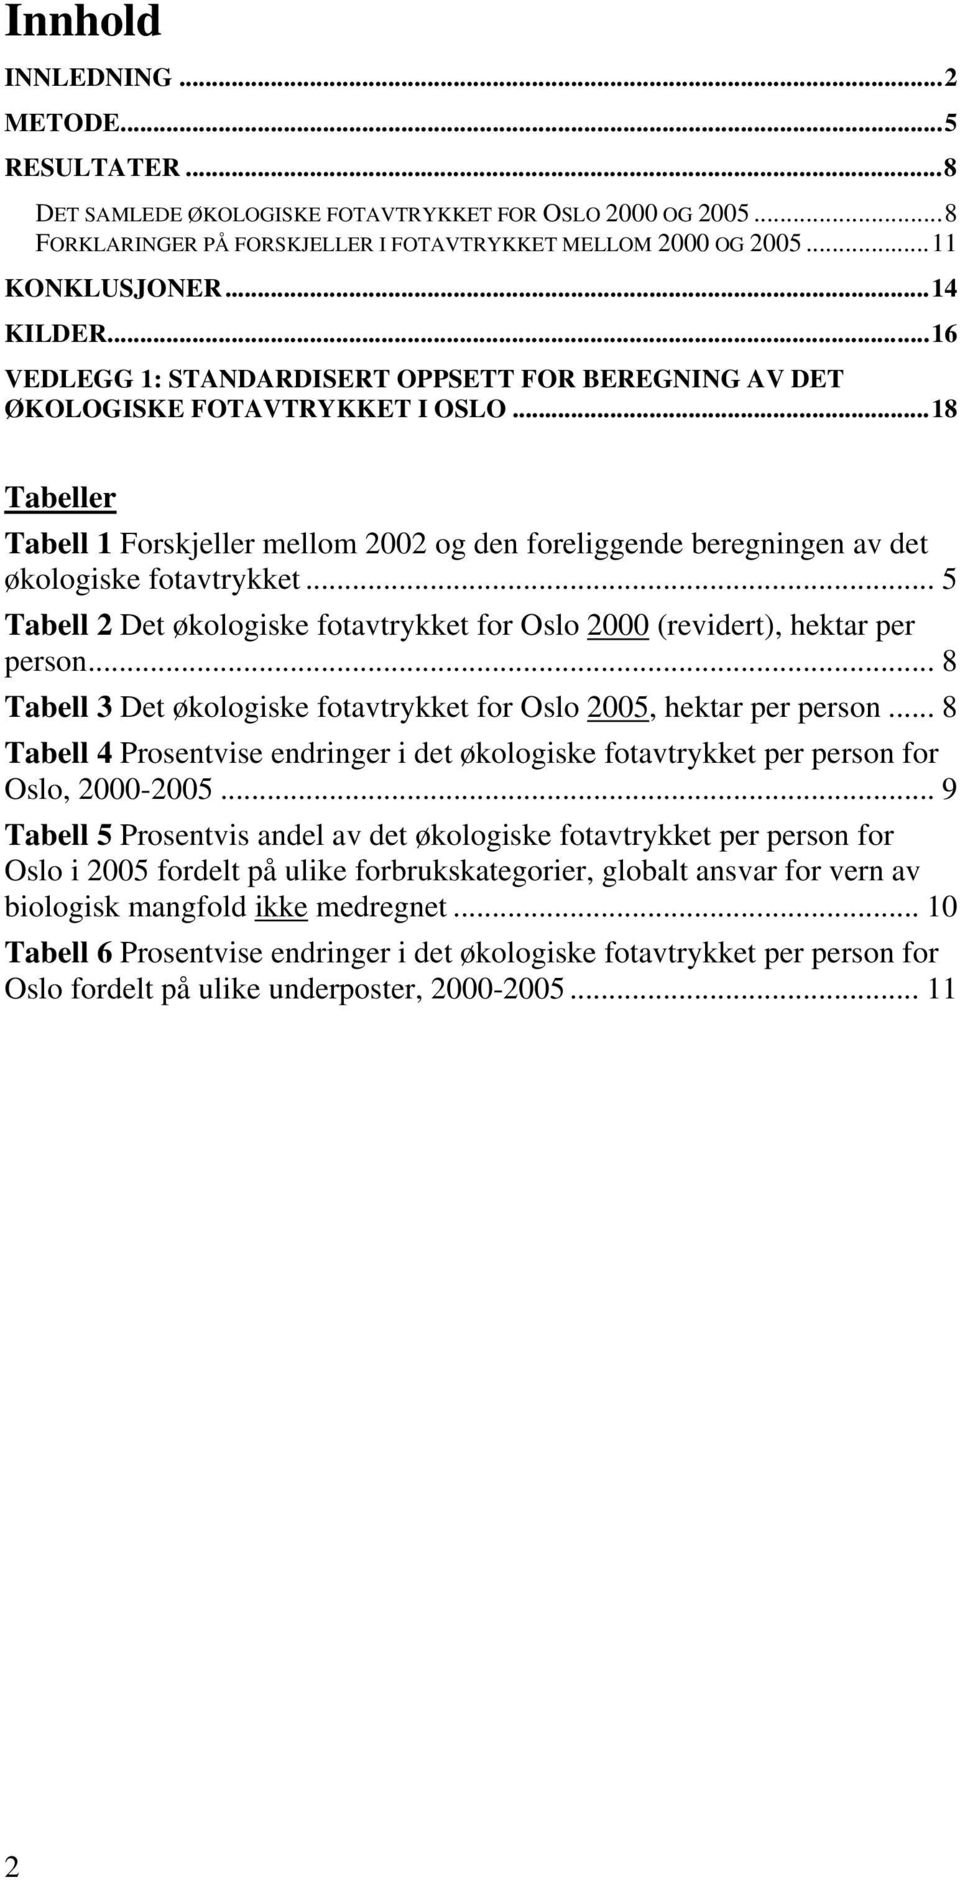 ..18 Tabeller Tabell 1 Forskjeller mellom 2002 og den foreliggende beregningen av det økologiske fotavtrykket... 5 Tabell 2 Det økologiske fotavtrykket for Oslo 2000 (revidert), hektar per person.